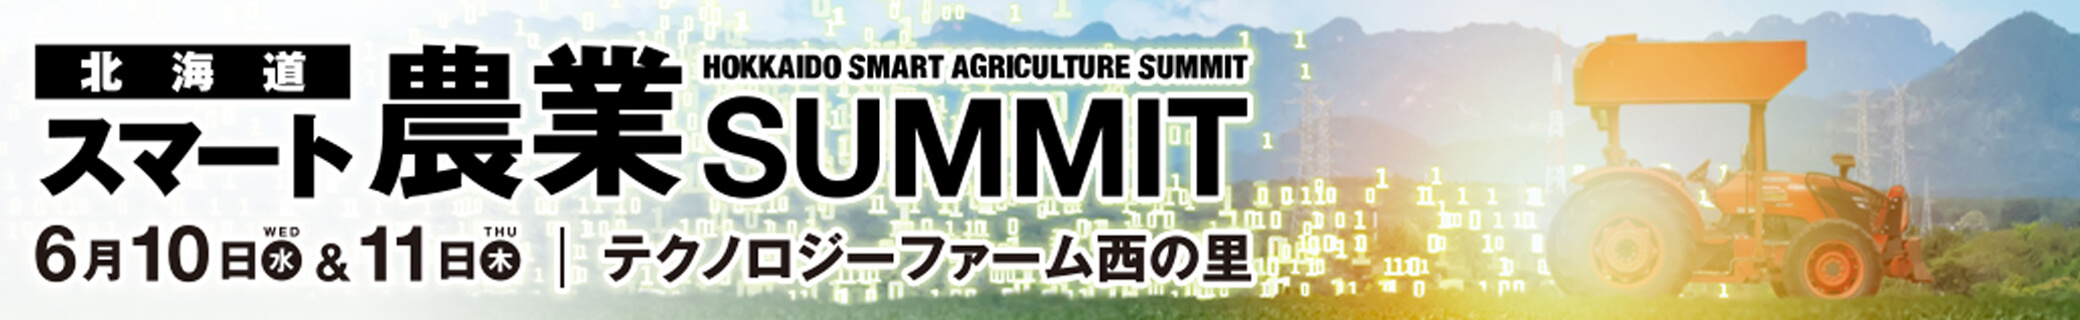 北海道スマート農業SUMMIT2020